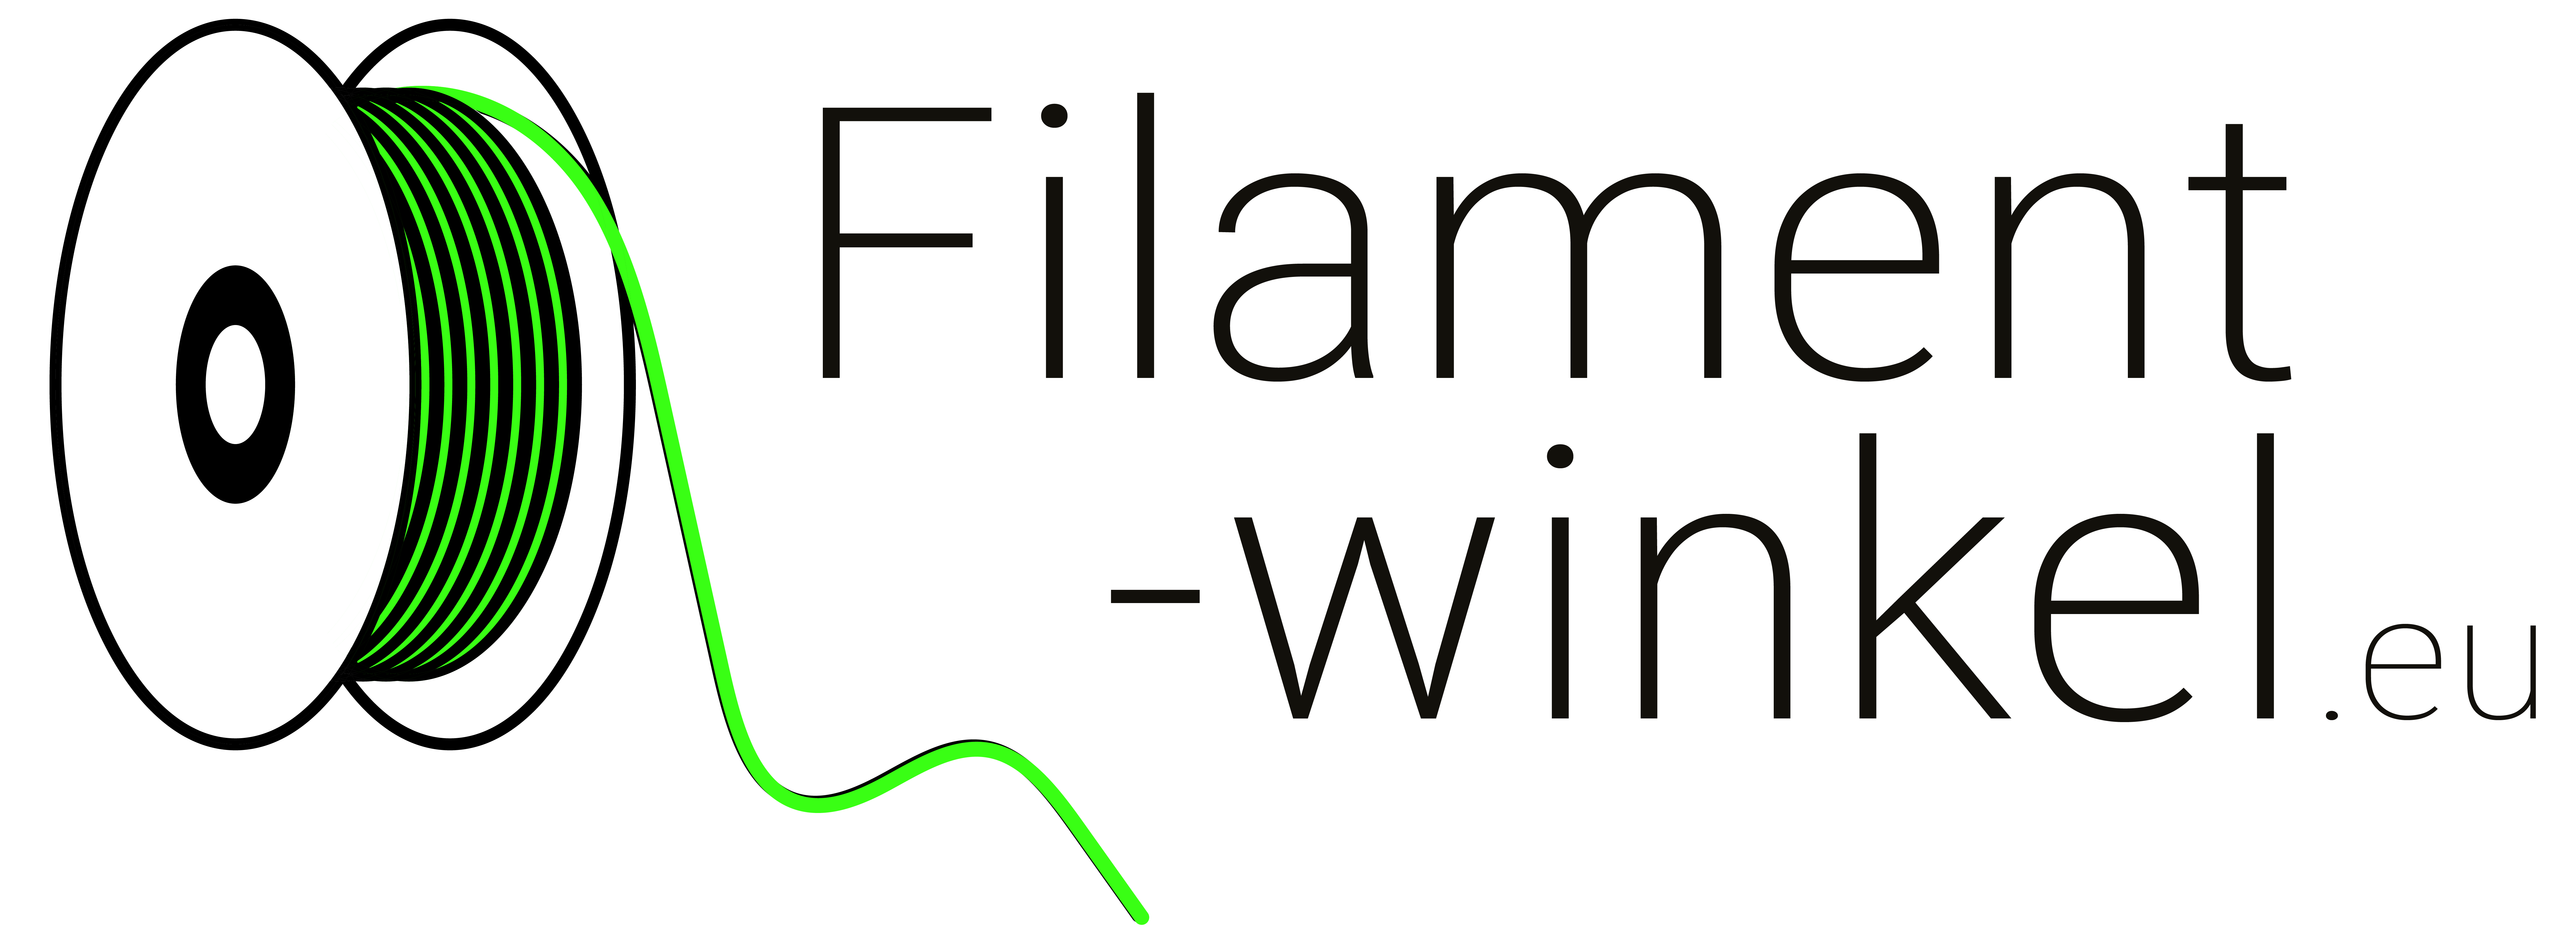 Filament-winkel